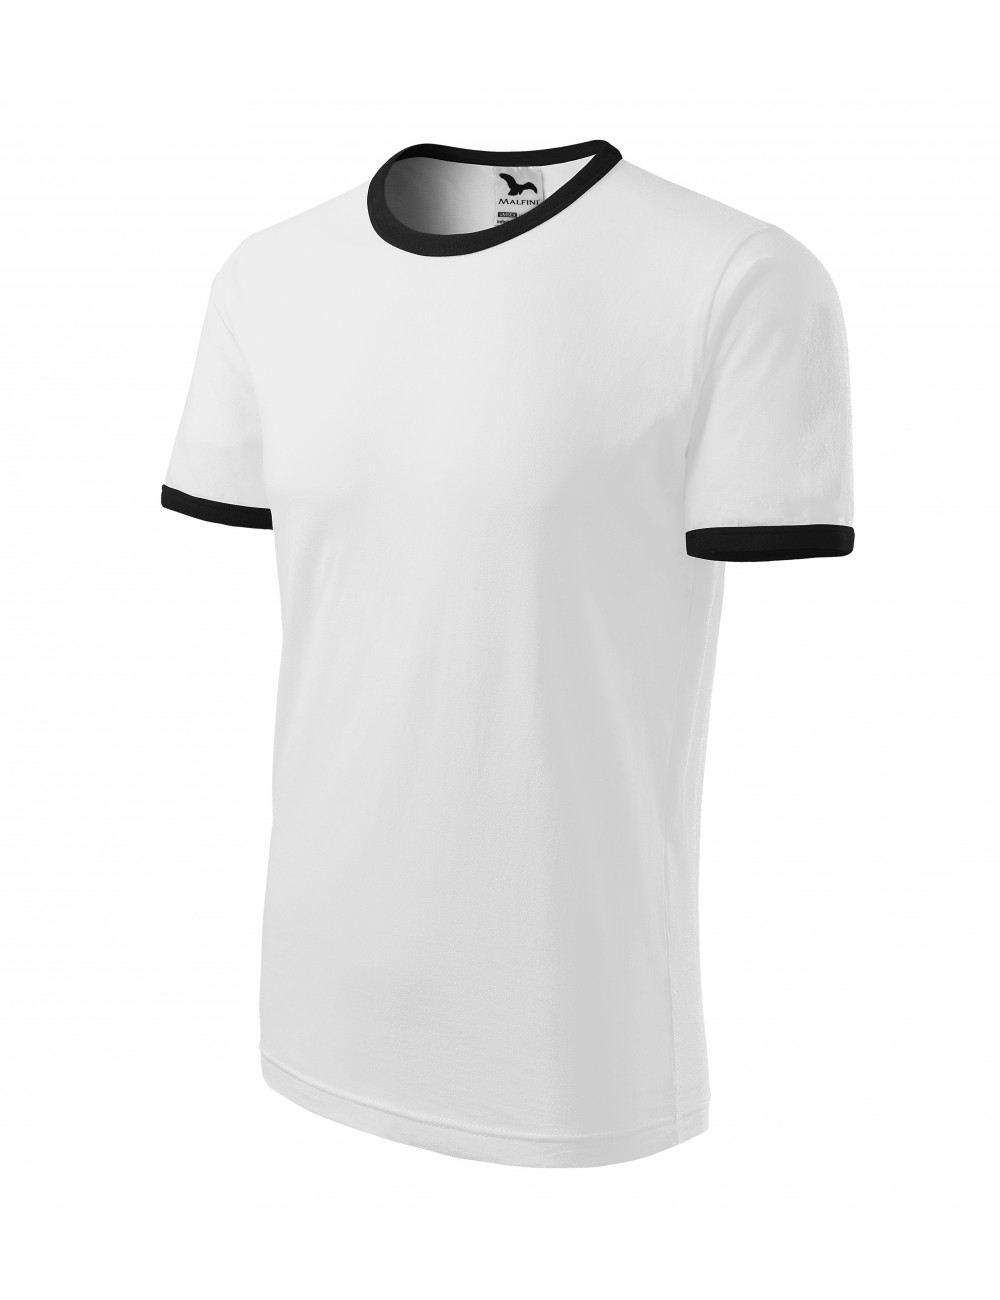 Unisex t-shirt infinity 131 white Adler Malfini